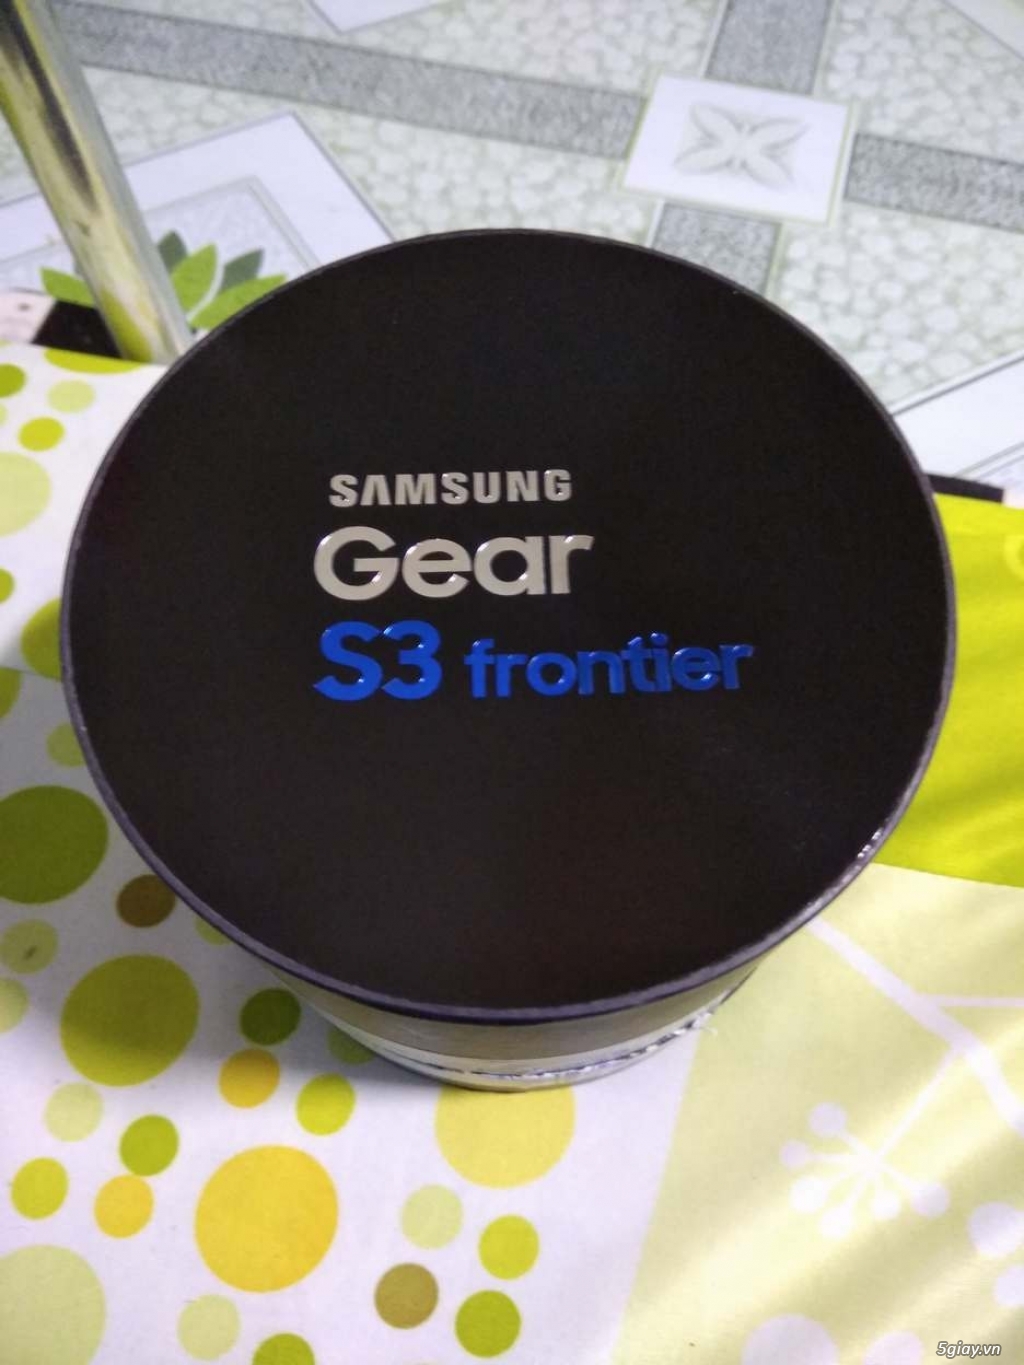 Gear S3 Frontier, BH chính hãng 12/2018, full box - 2